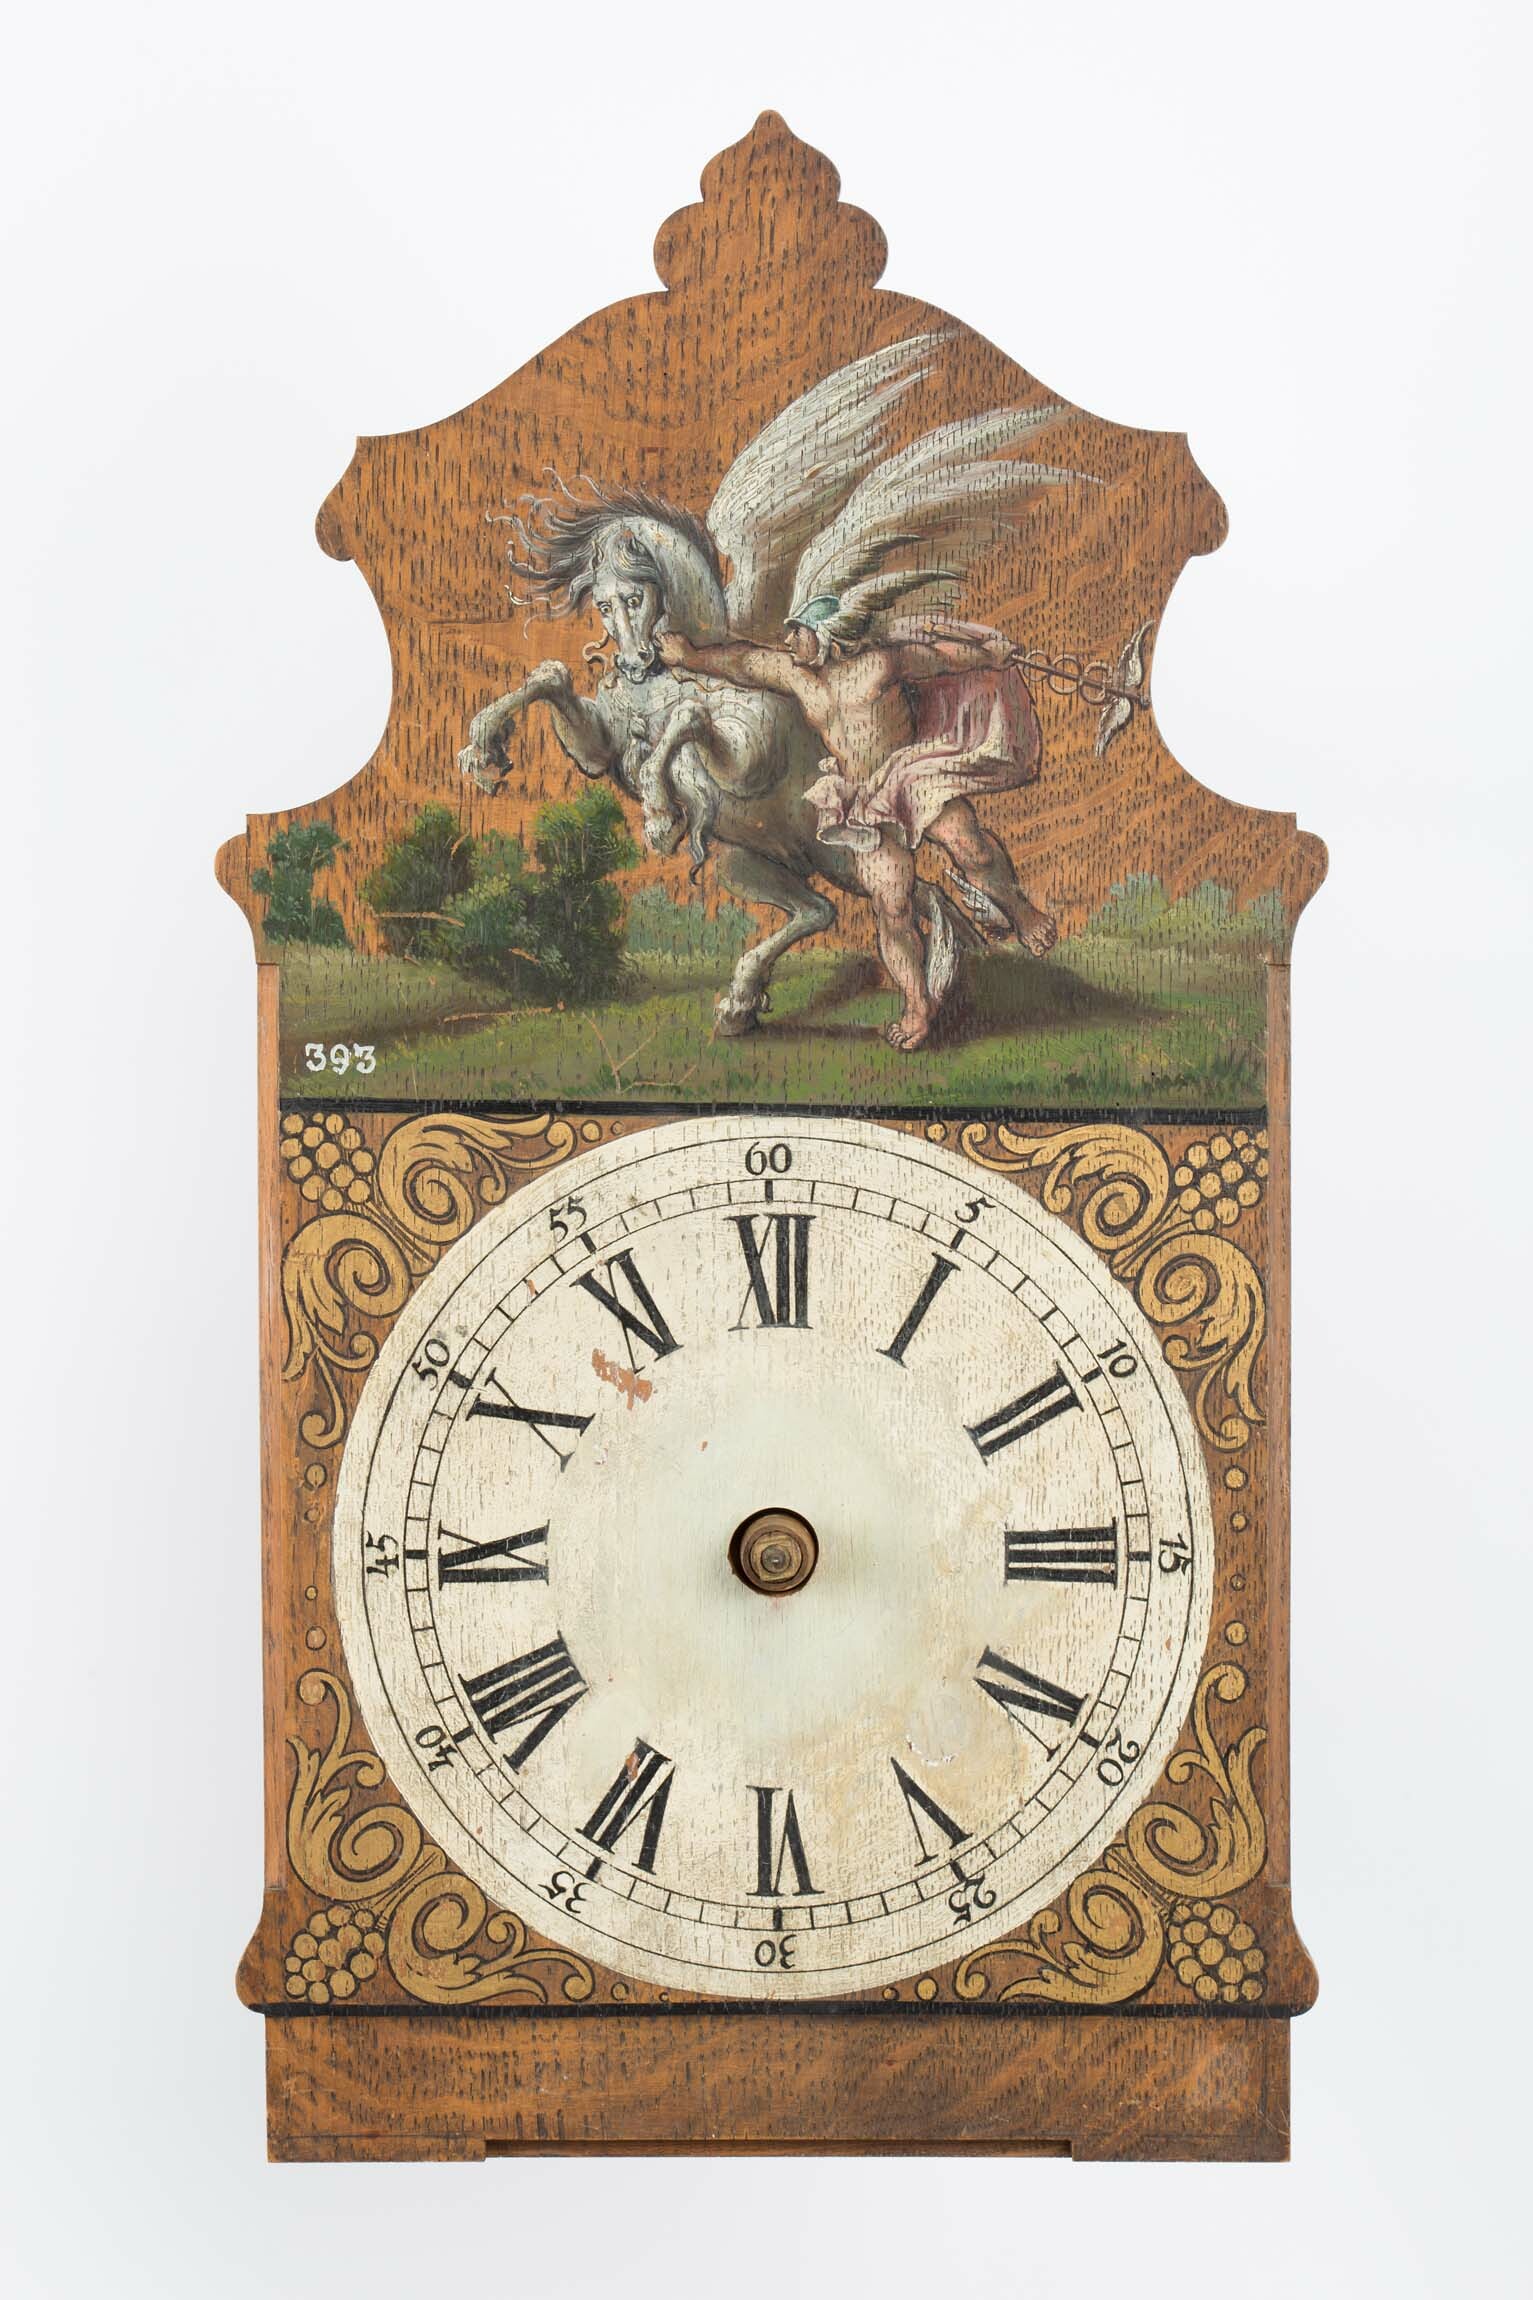 Holzräderuhr, Schwarzwald, um 1800 (Deutsches Uhrenmuseum CC BY-SA)